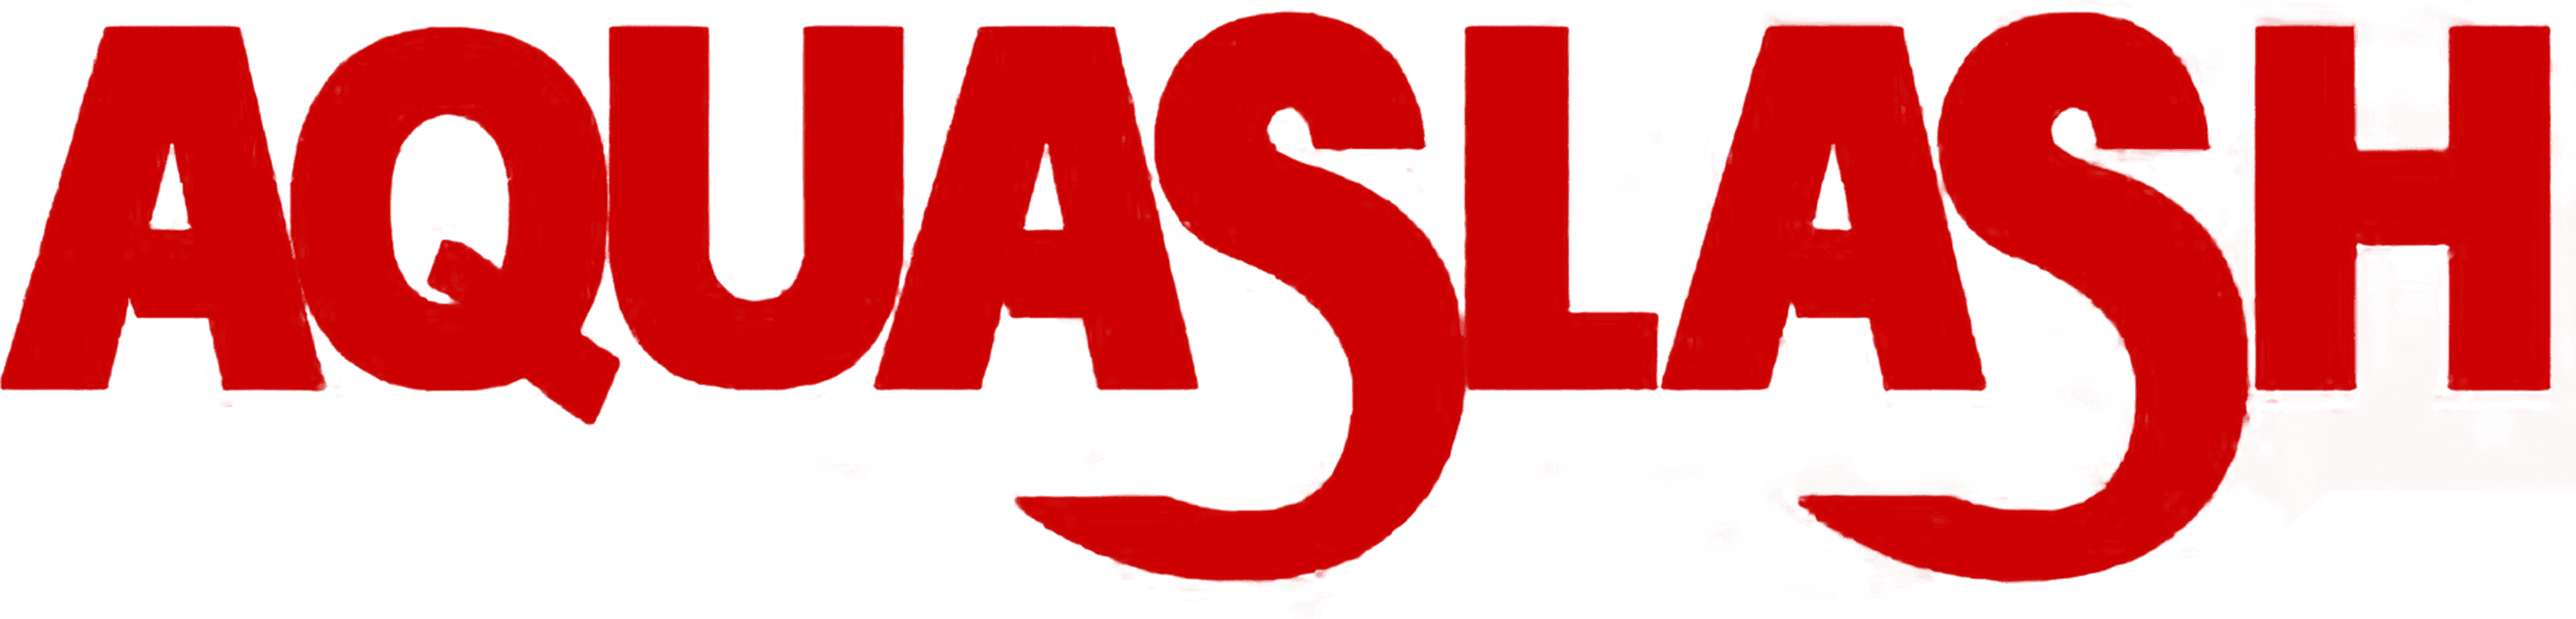 Aquaslash logo